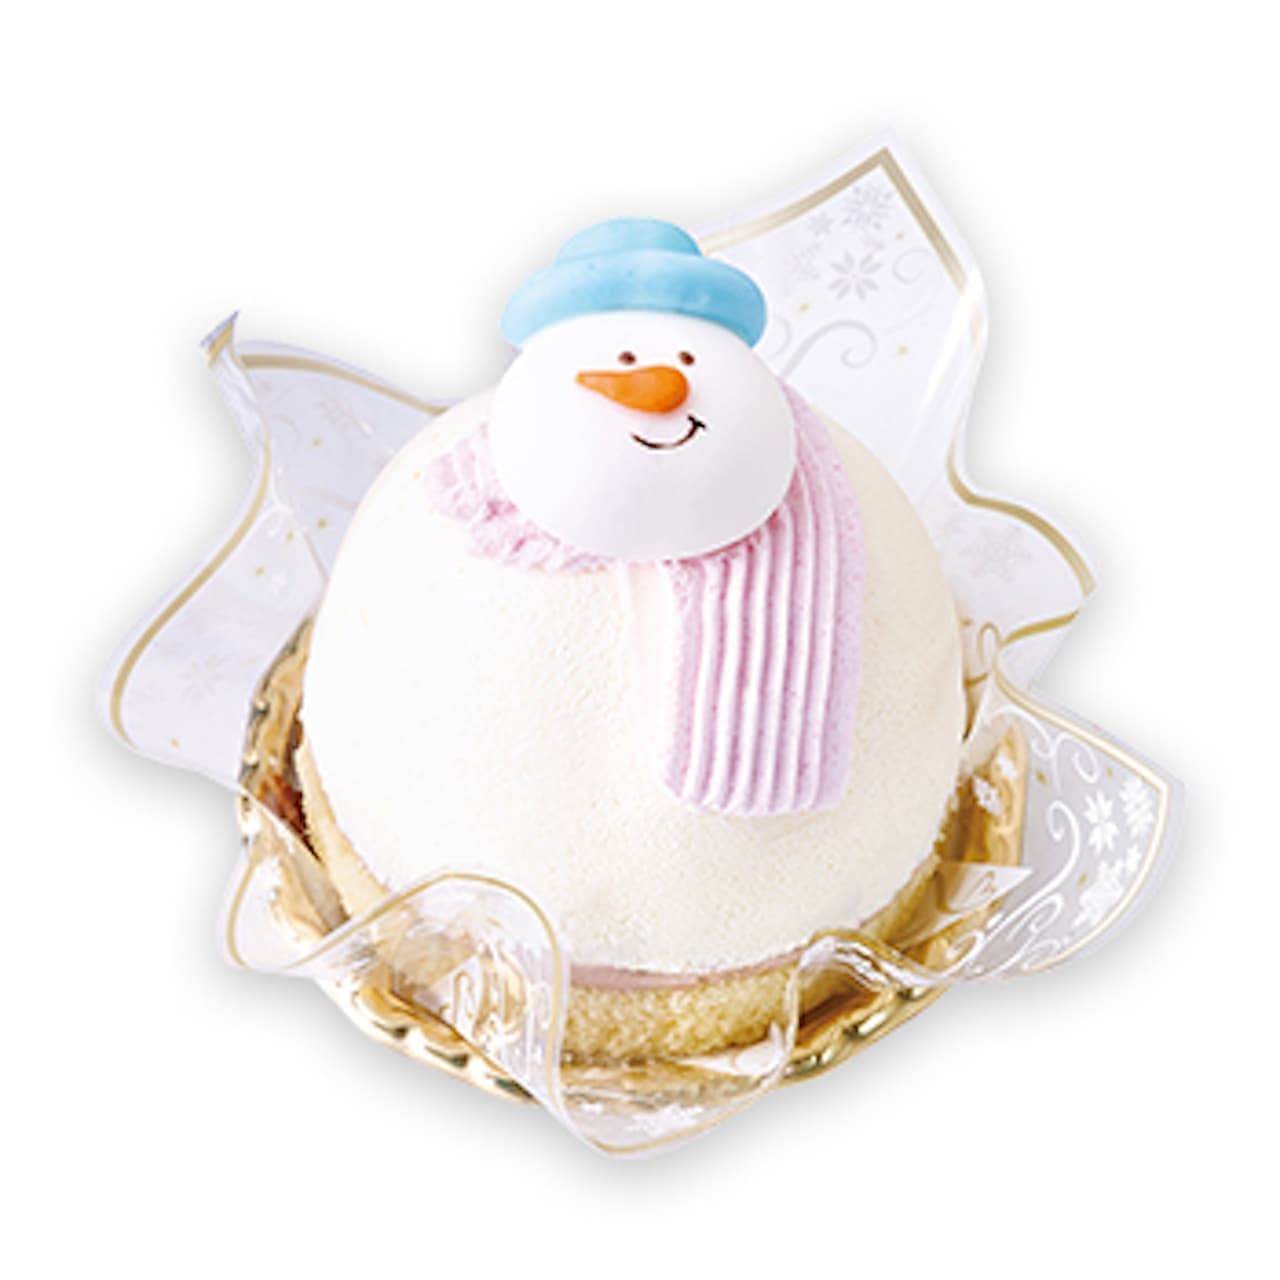 Fujiya "Christmas Snowman Cake